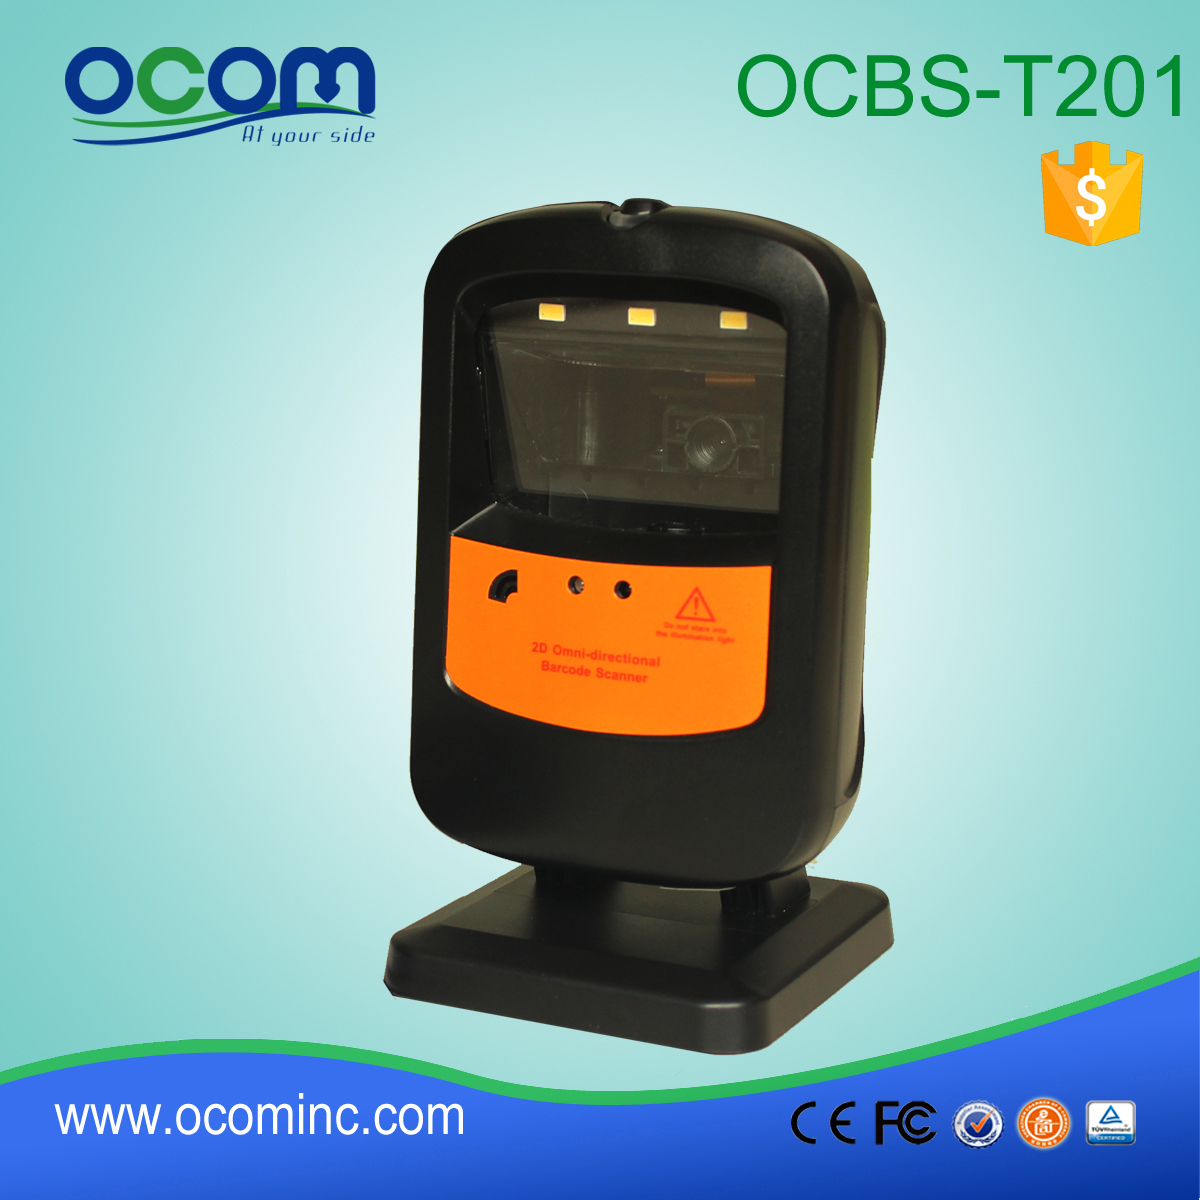 OCBs-T201: всенаправленные поставщики сканер штрих-кодов, штрих-код модуля читатель